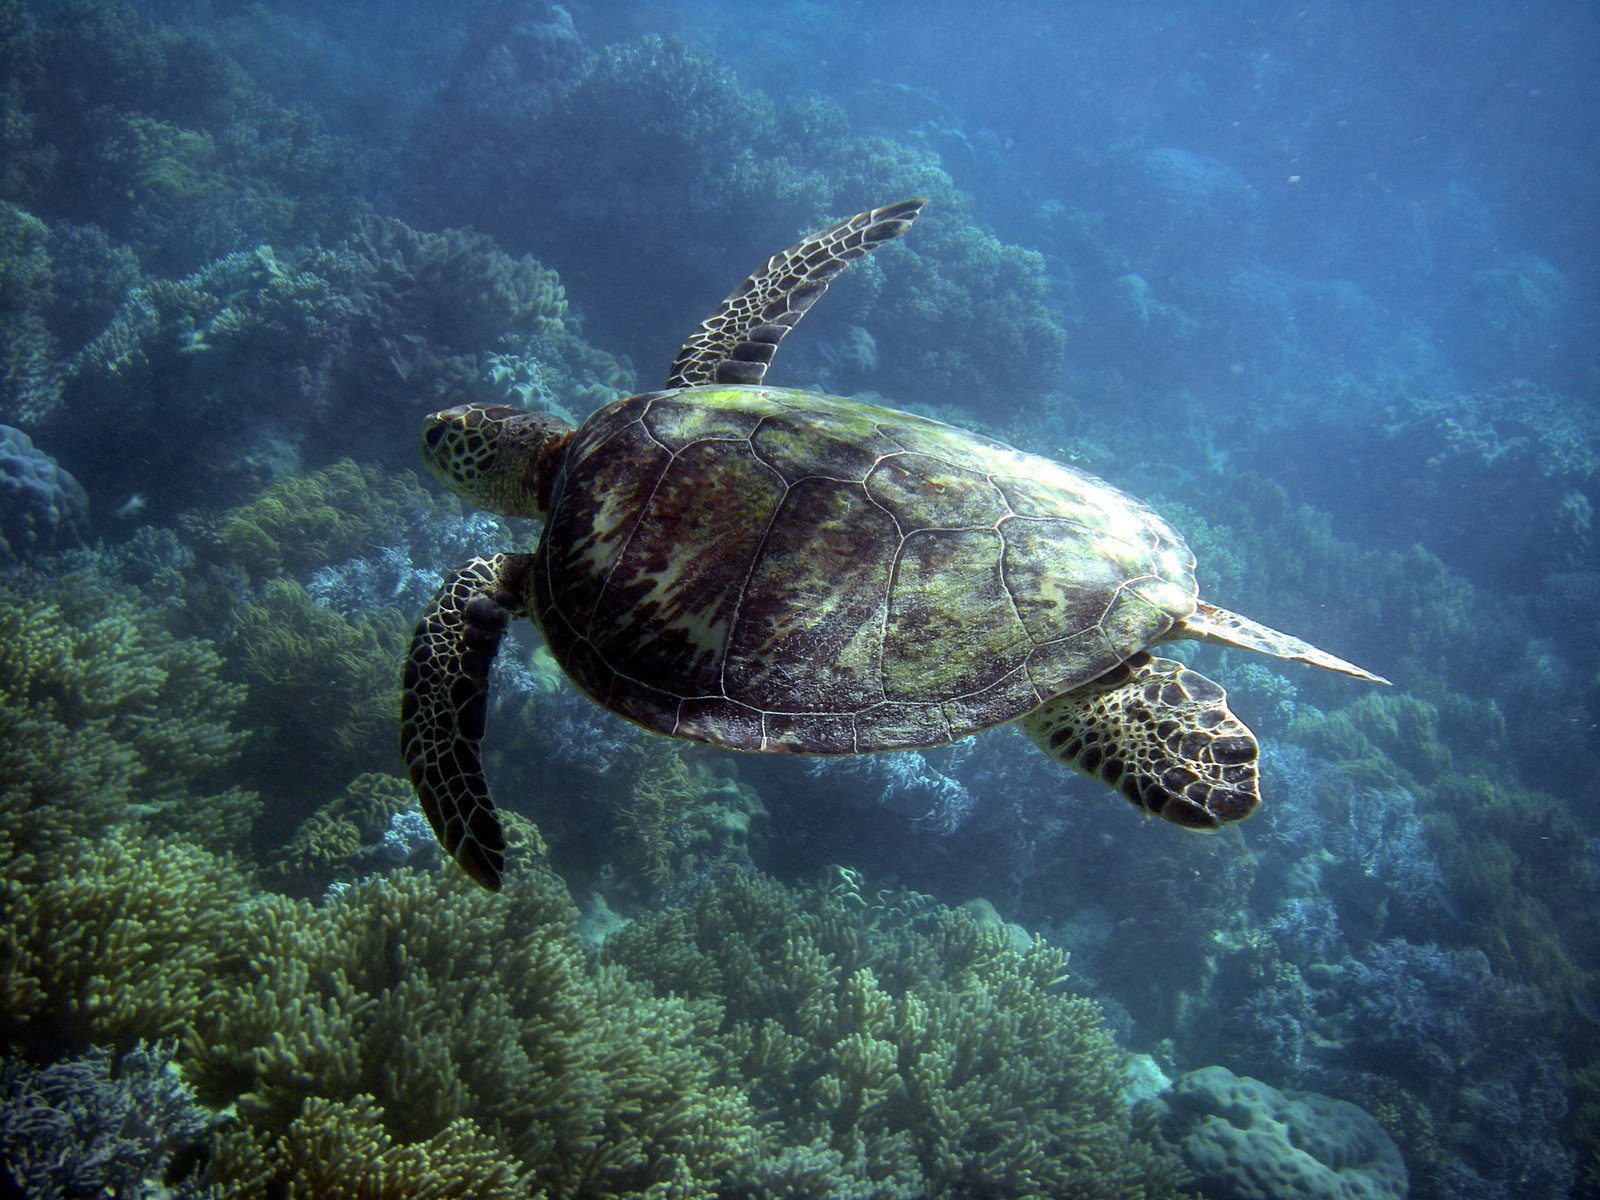 Turtle, Great Barrier Reef, Australia